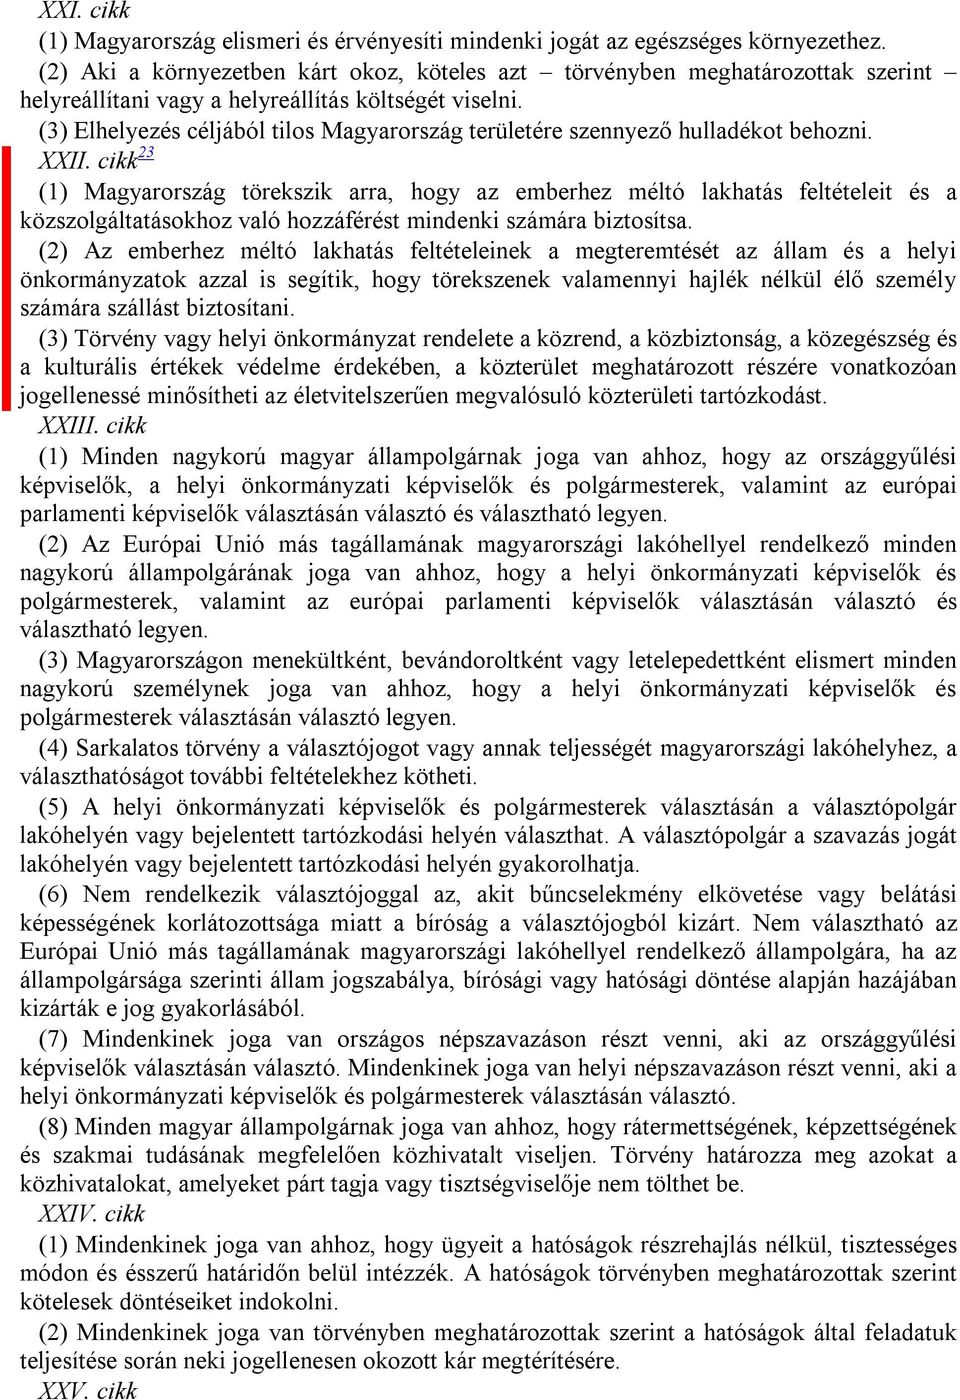 (3) Elhelyezés céljából tilos Magyarország területére szennyező hulladékot behozni. XXII.